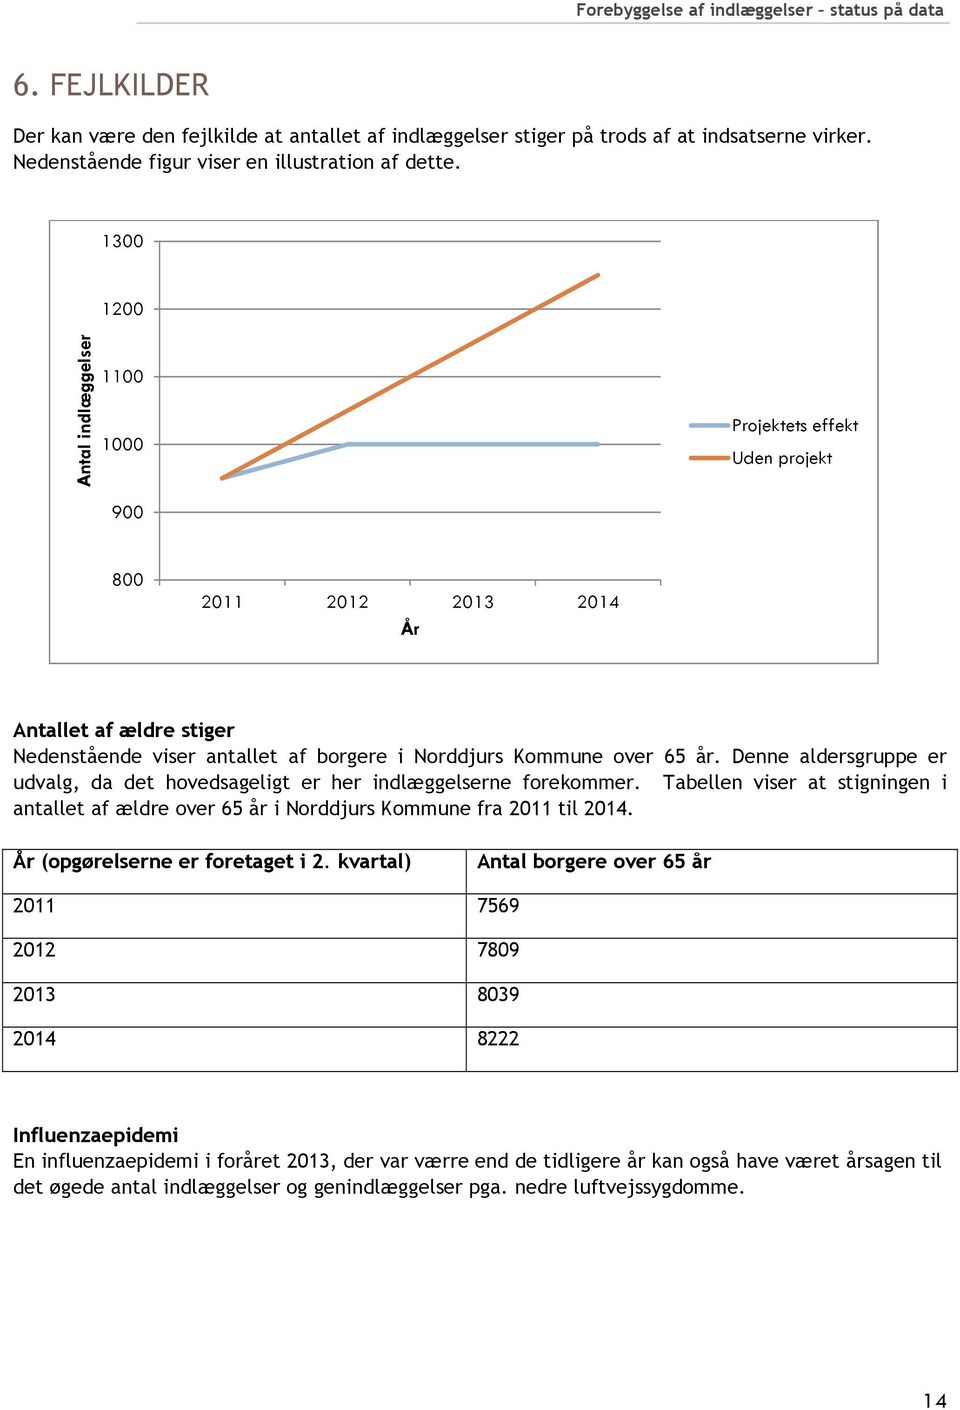 Denne aldersgruppe er udvalg, da det hovedsageligt er her indlæggelserne forekommer. Tabellen viser at stigningen i antallet af ældre over 65 år i Norddjurs Kommune fra 2011 til 2014.